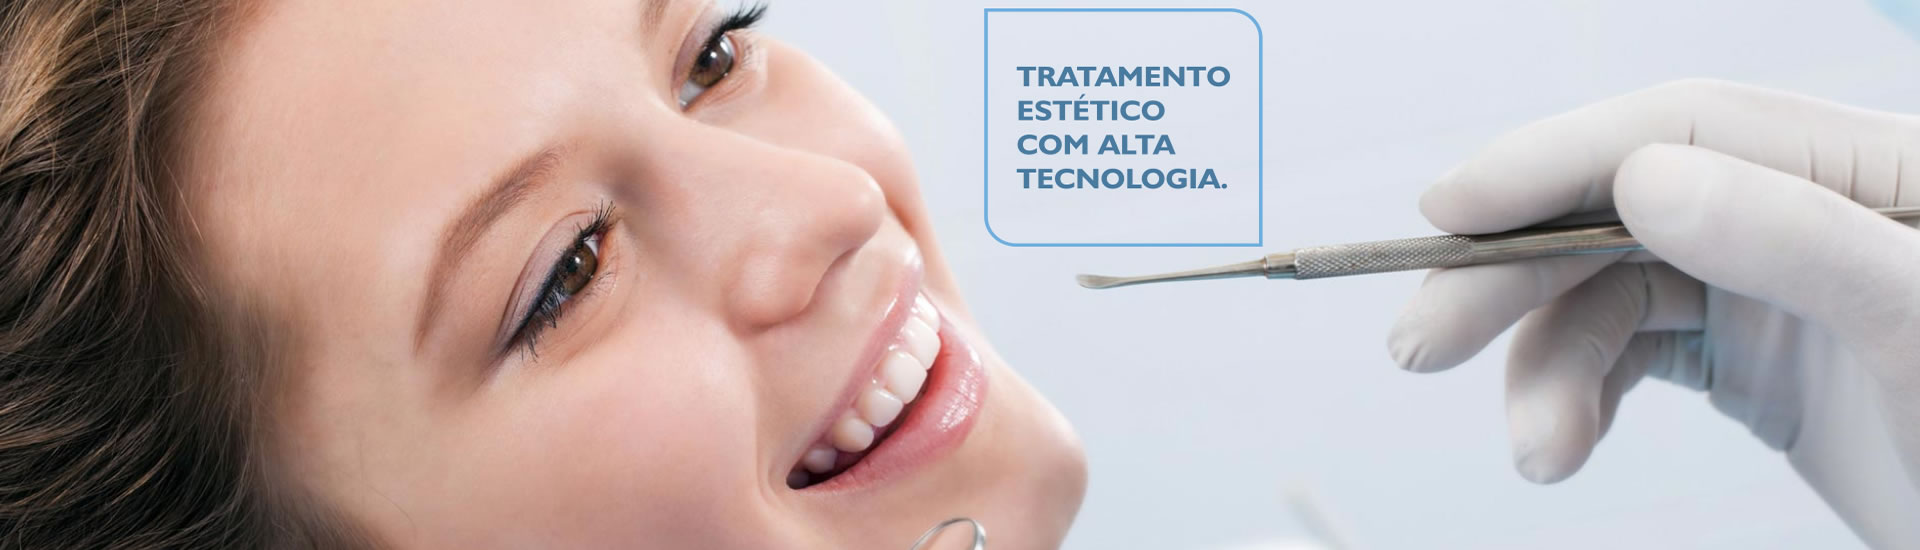 Dr. Diego César Ortodontia e Implantes - Patos de Minas/MG